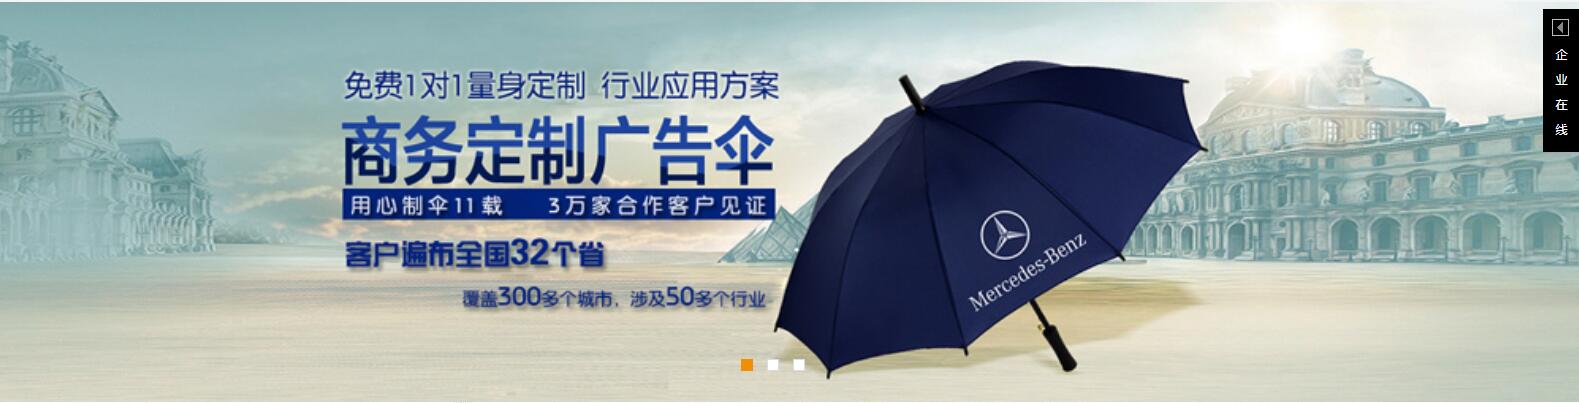 广告礼品伞、南充雨伞厂、嘉鸿折叠伞价格